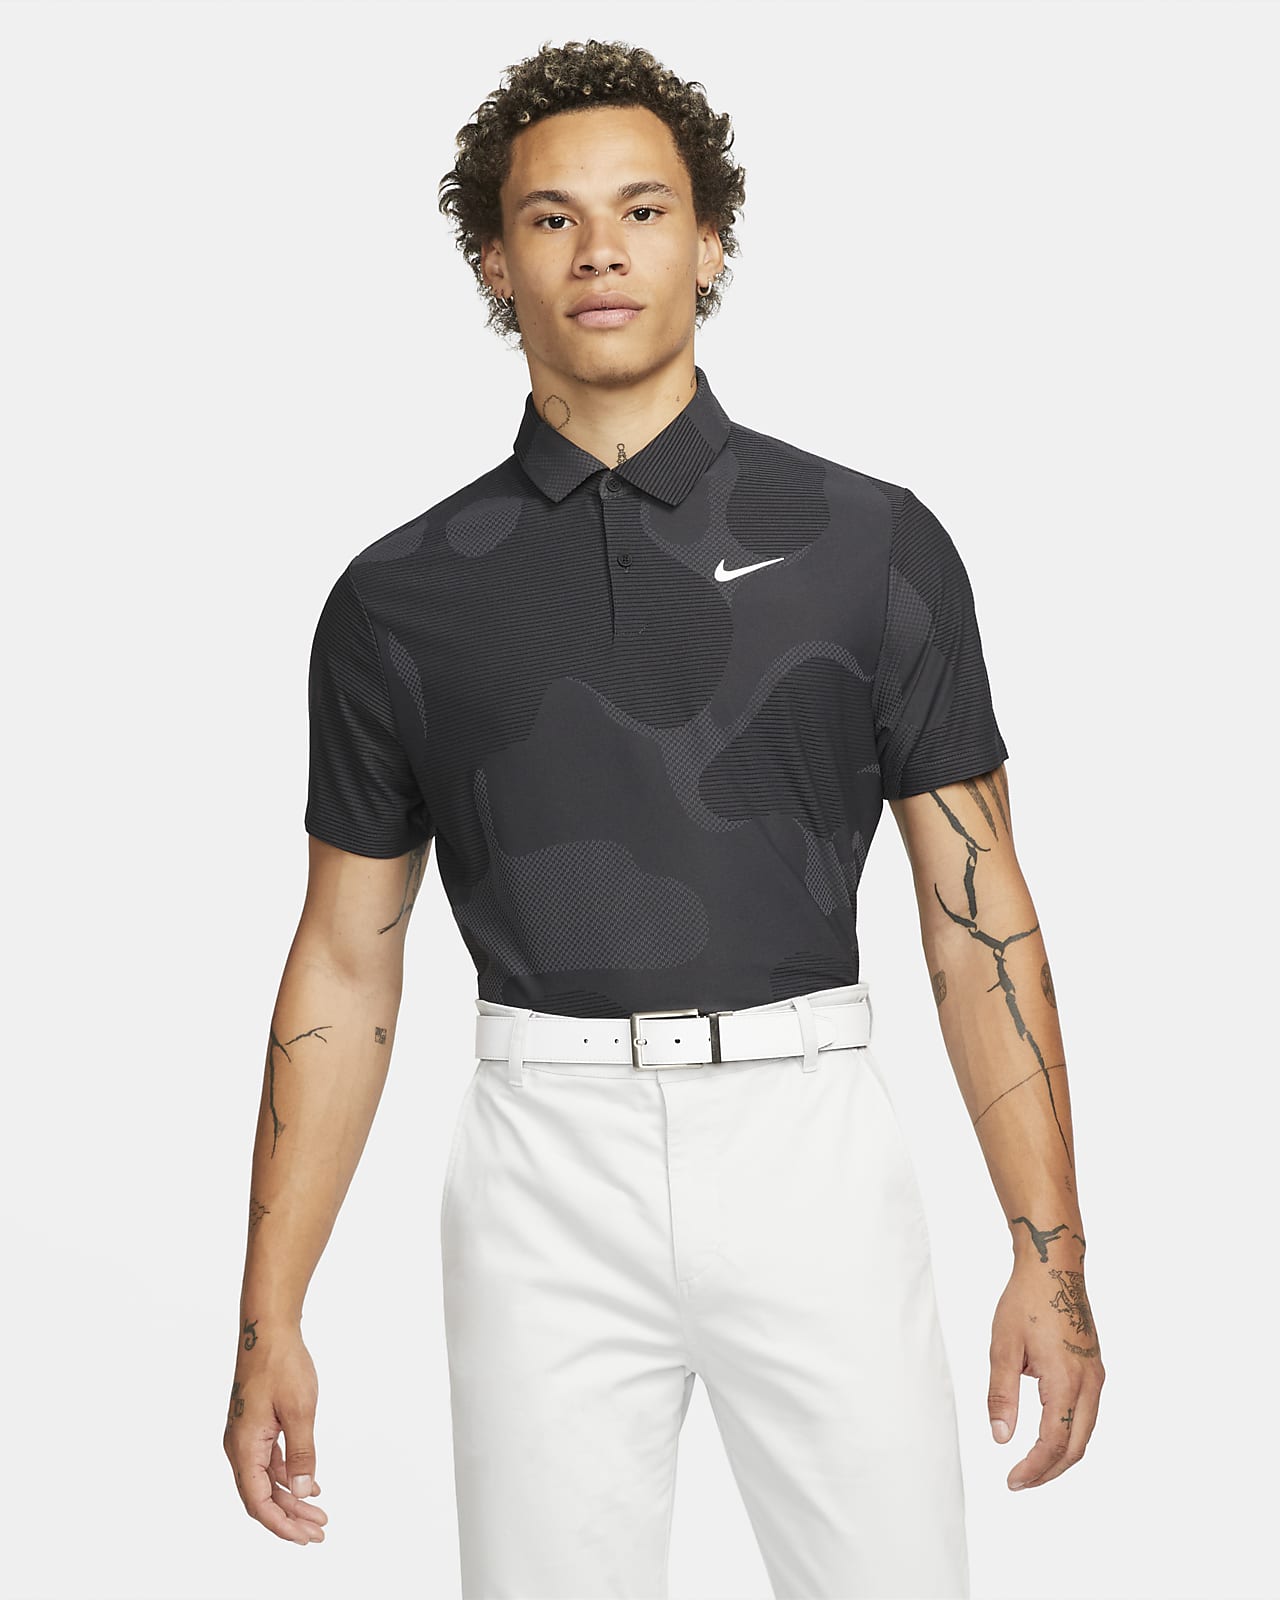 Nike Dri-FIT ADV Tour golfskjorte med kamomønster til herre